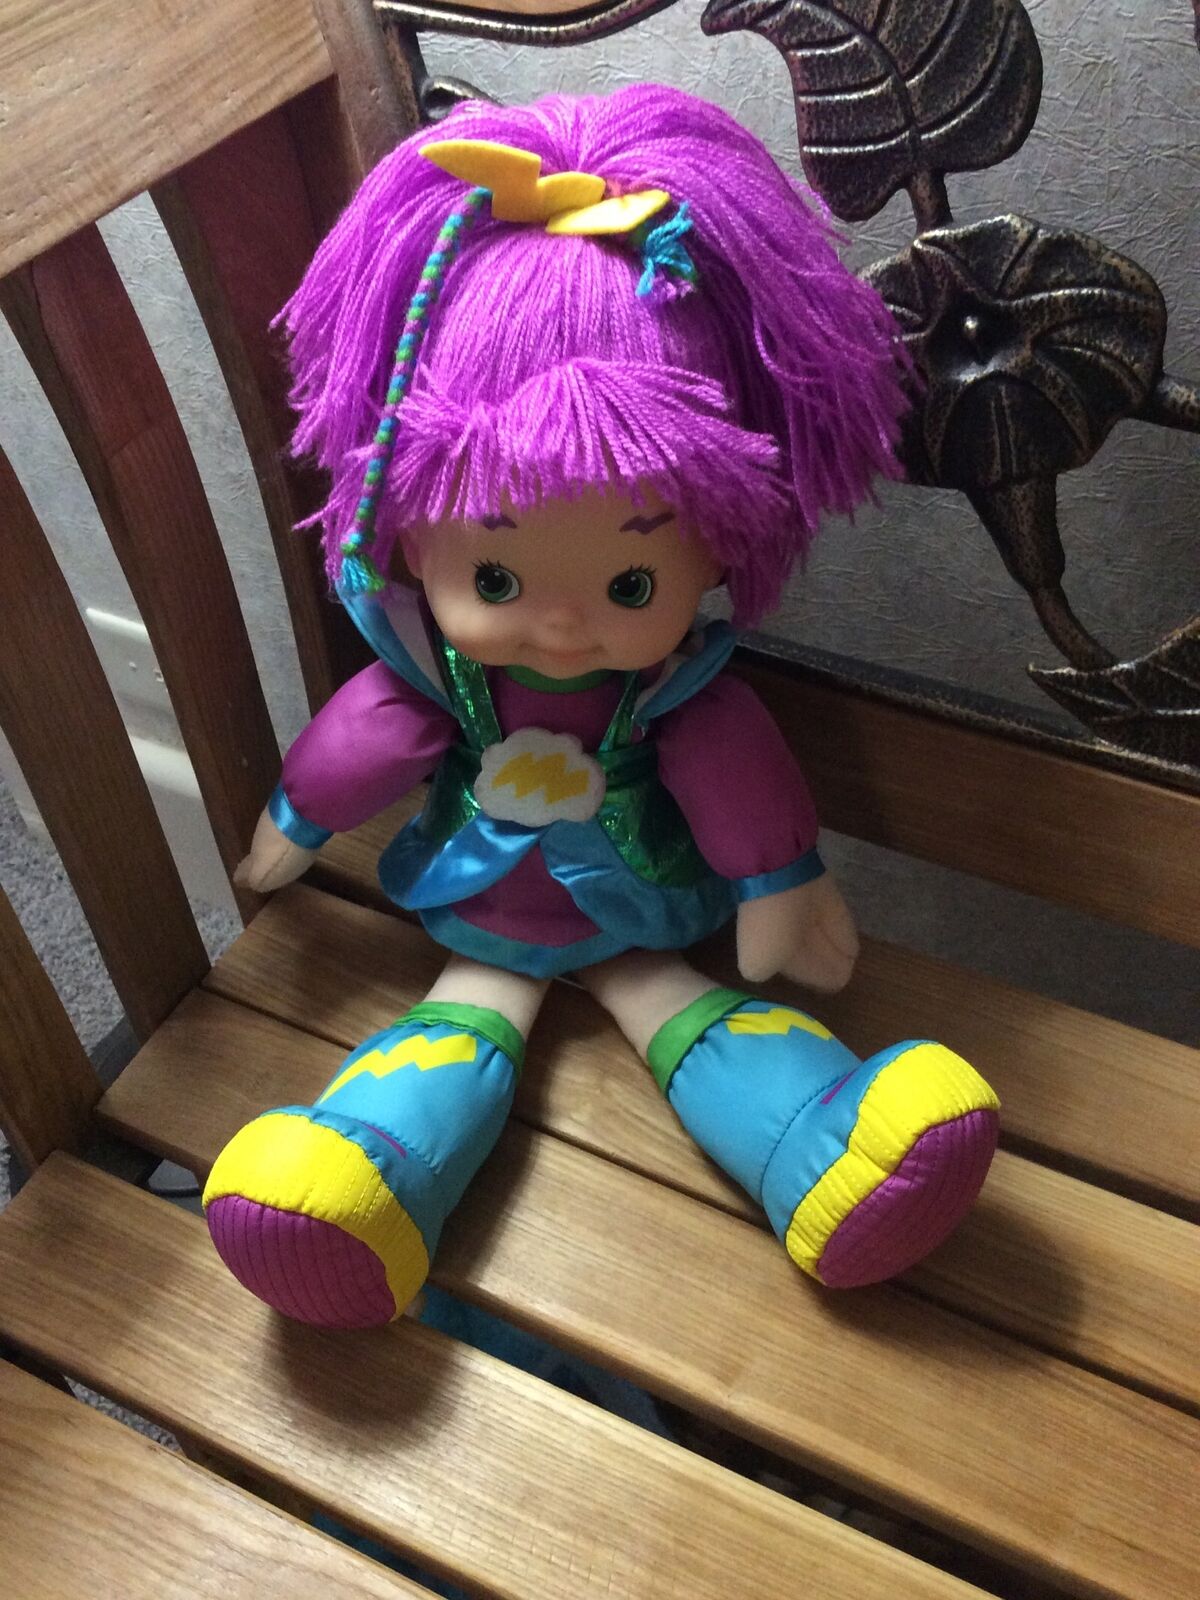 Hallmark 16" Stormy Doll Rainbow Brite Friend Retired. Adorable